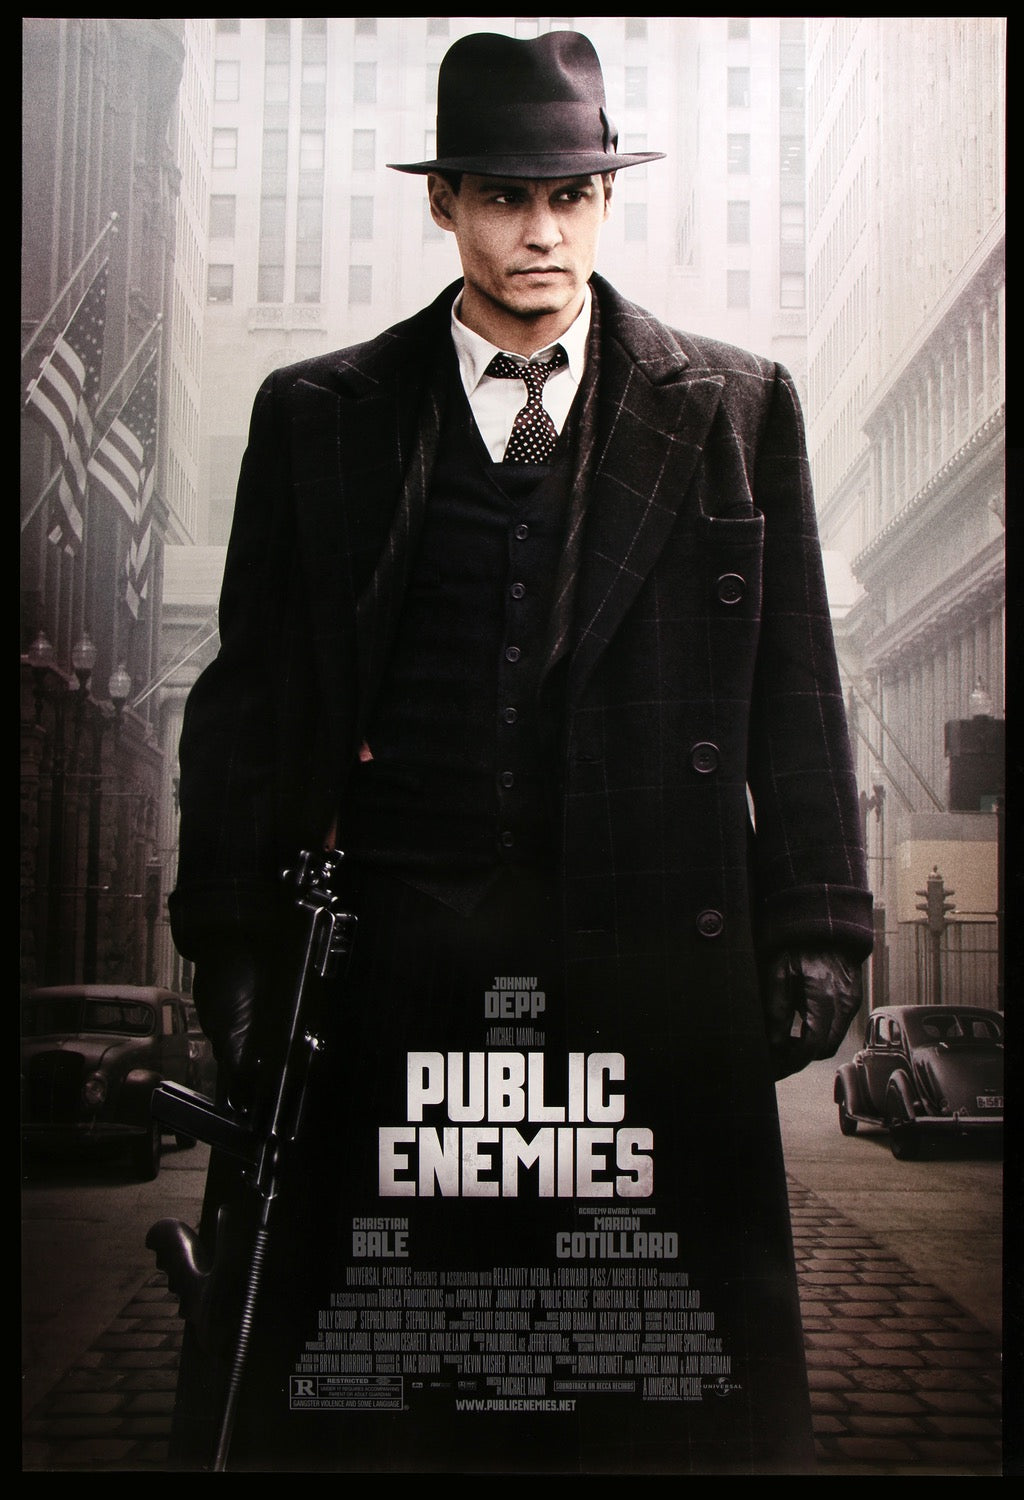 Public Enemies (2009) original movie poster for sale at Original Film Art